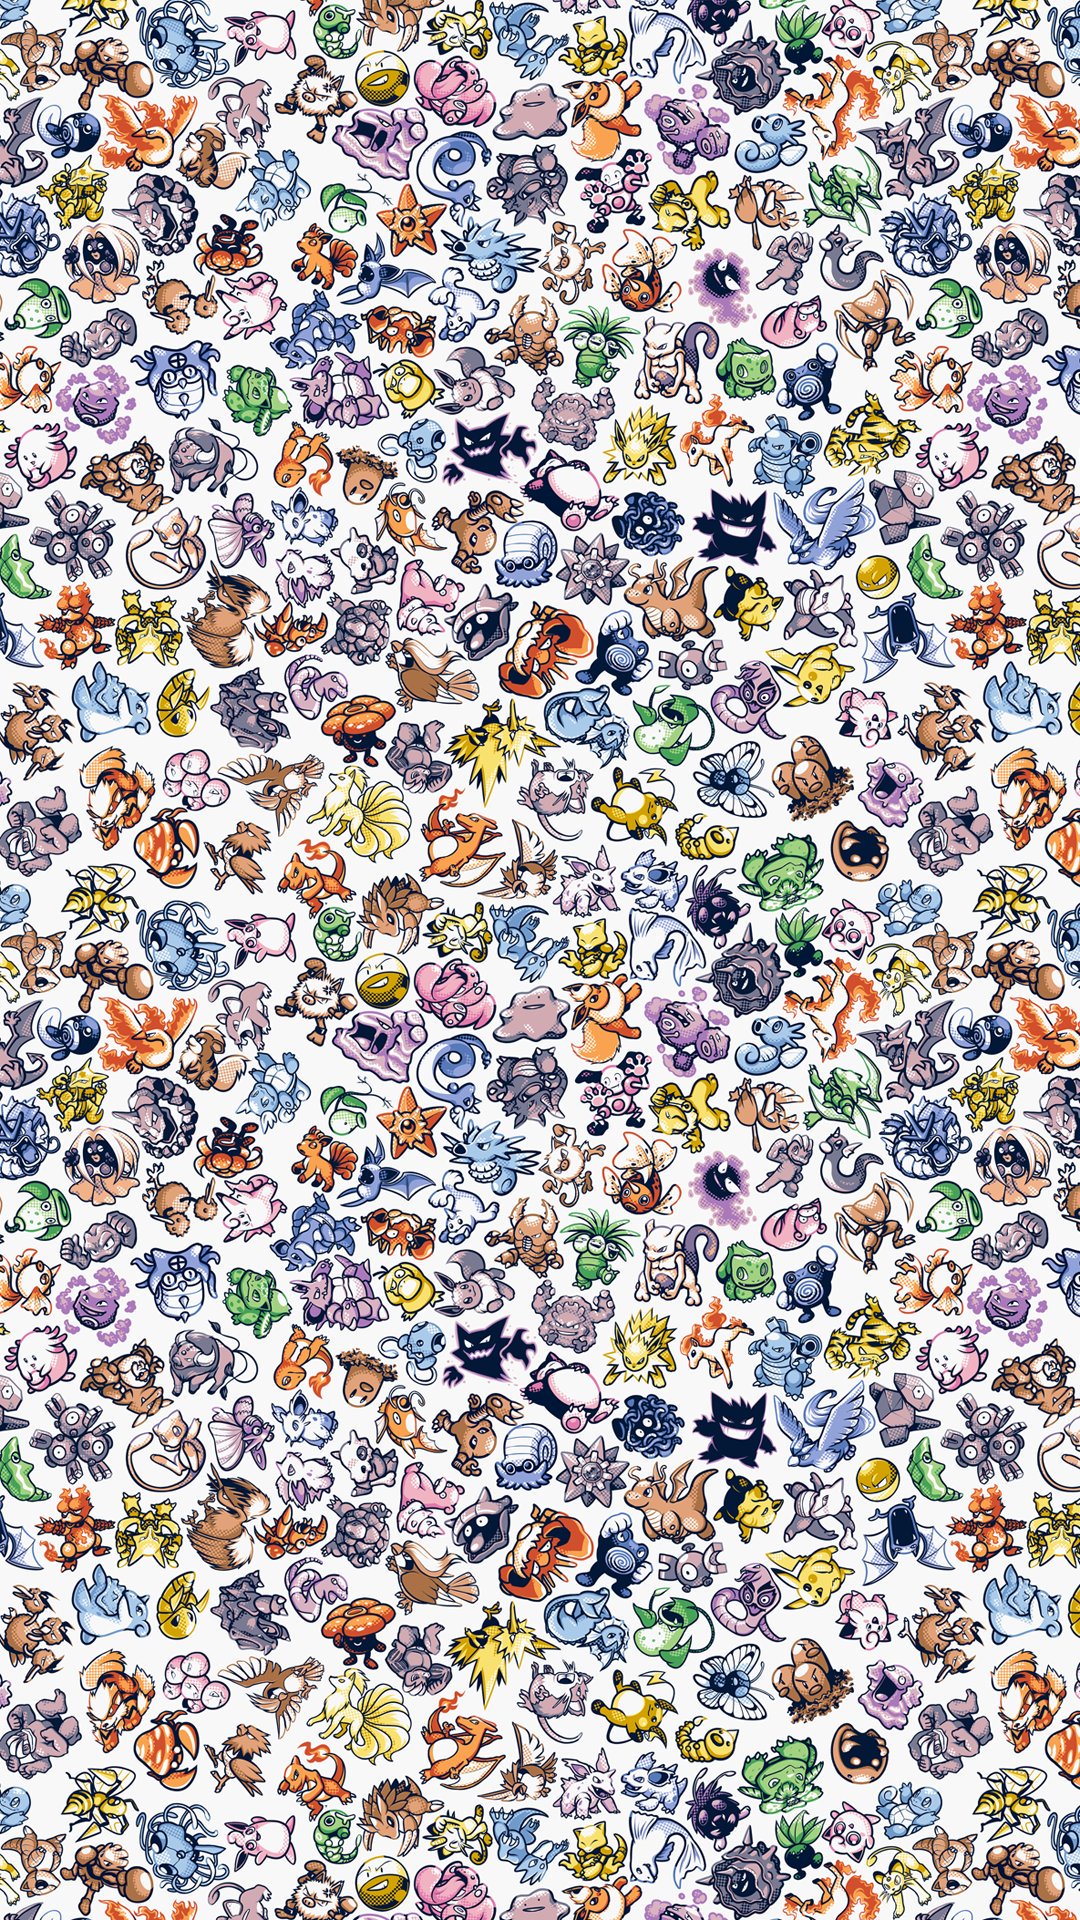 Lou Lilie — The original 151 Pokémon I drew for our Pokémon